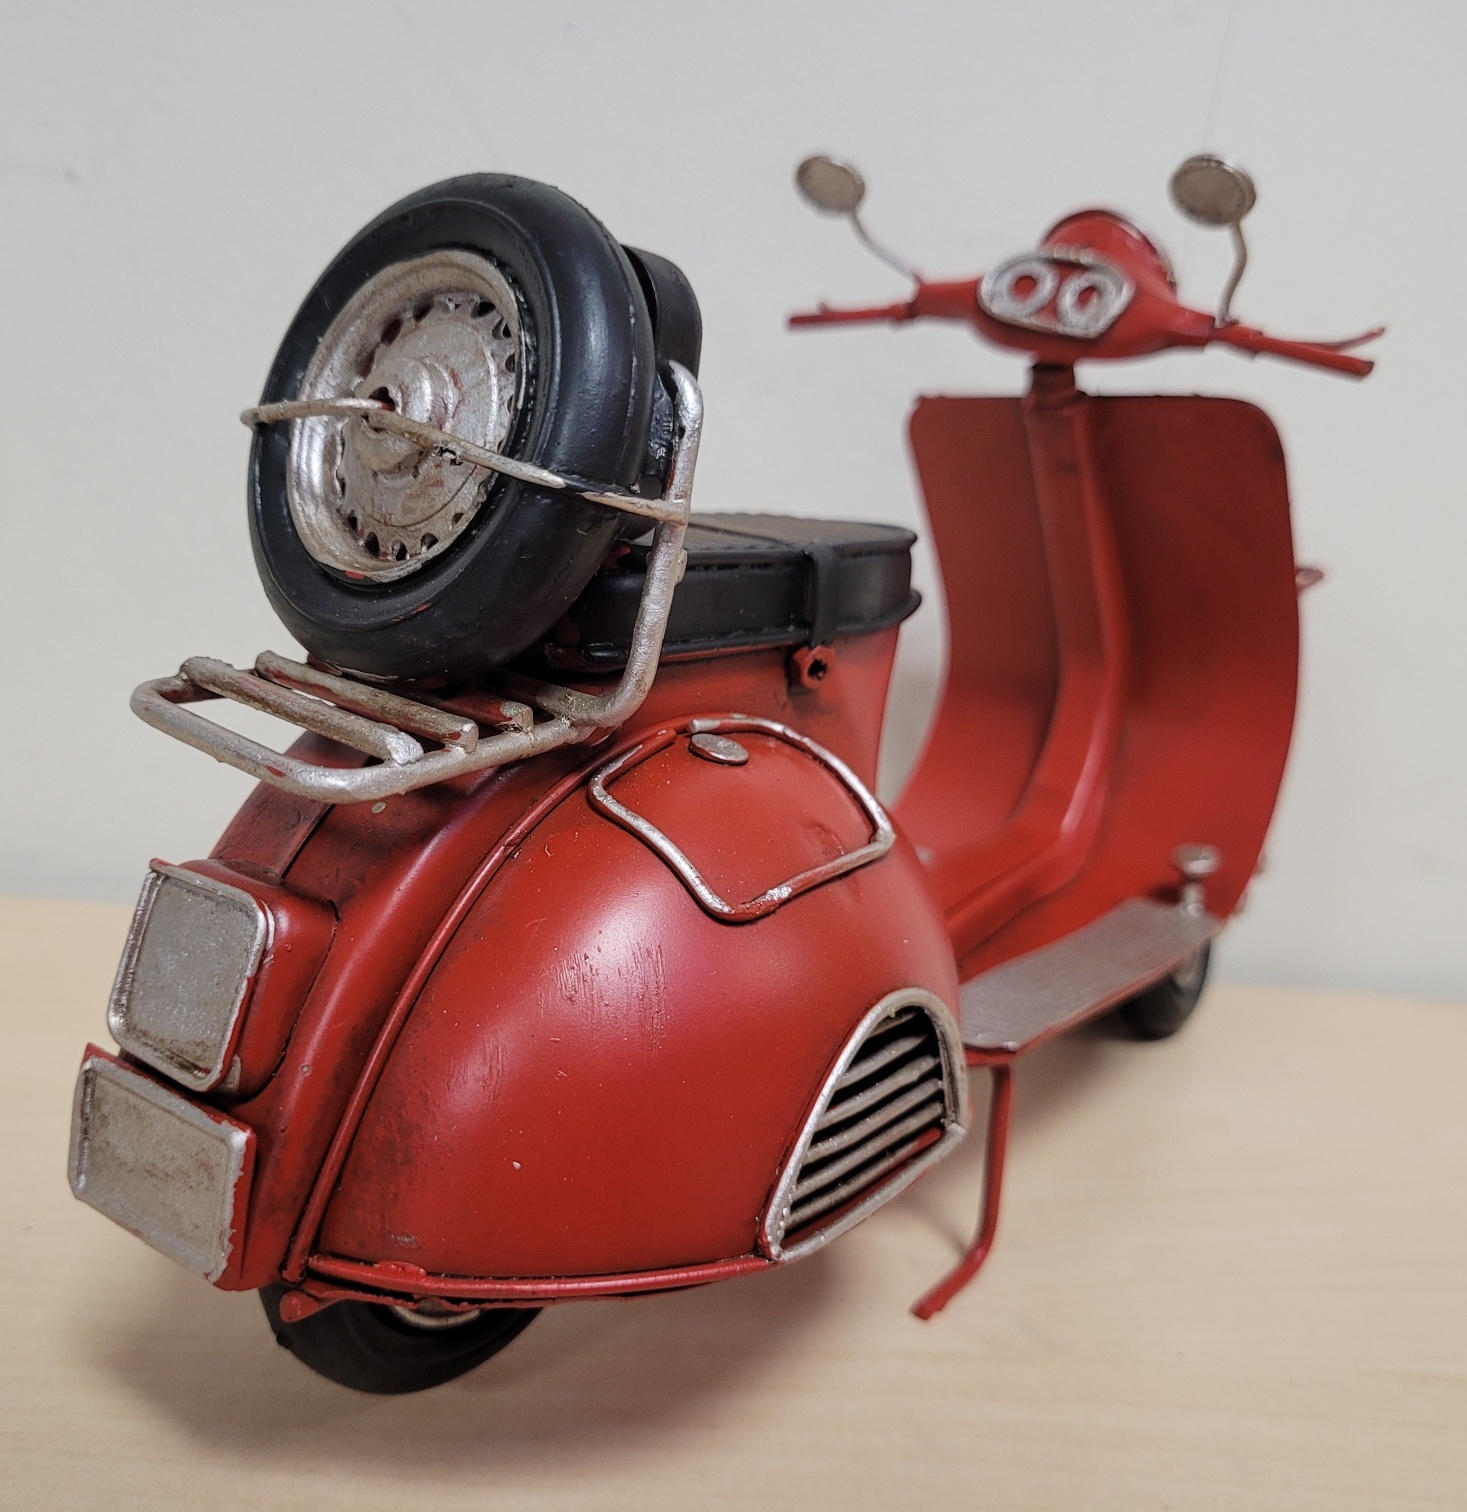 Rode retro scooter metalen model